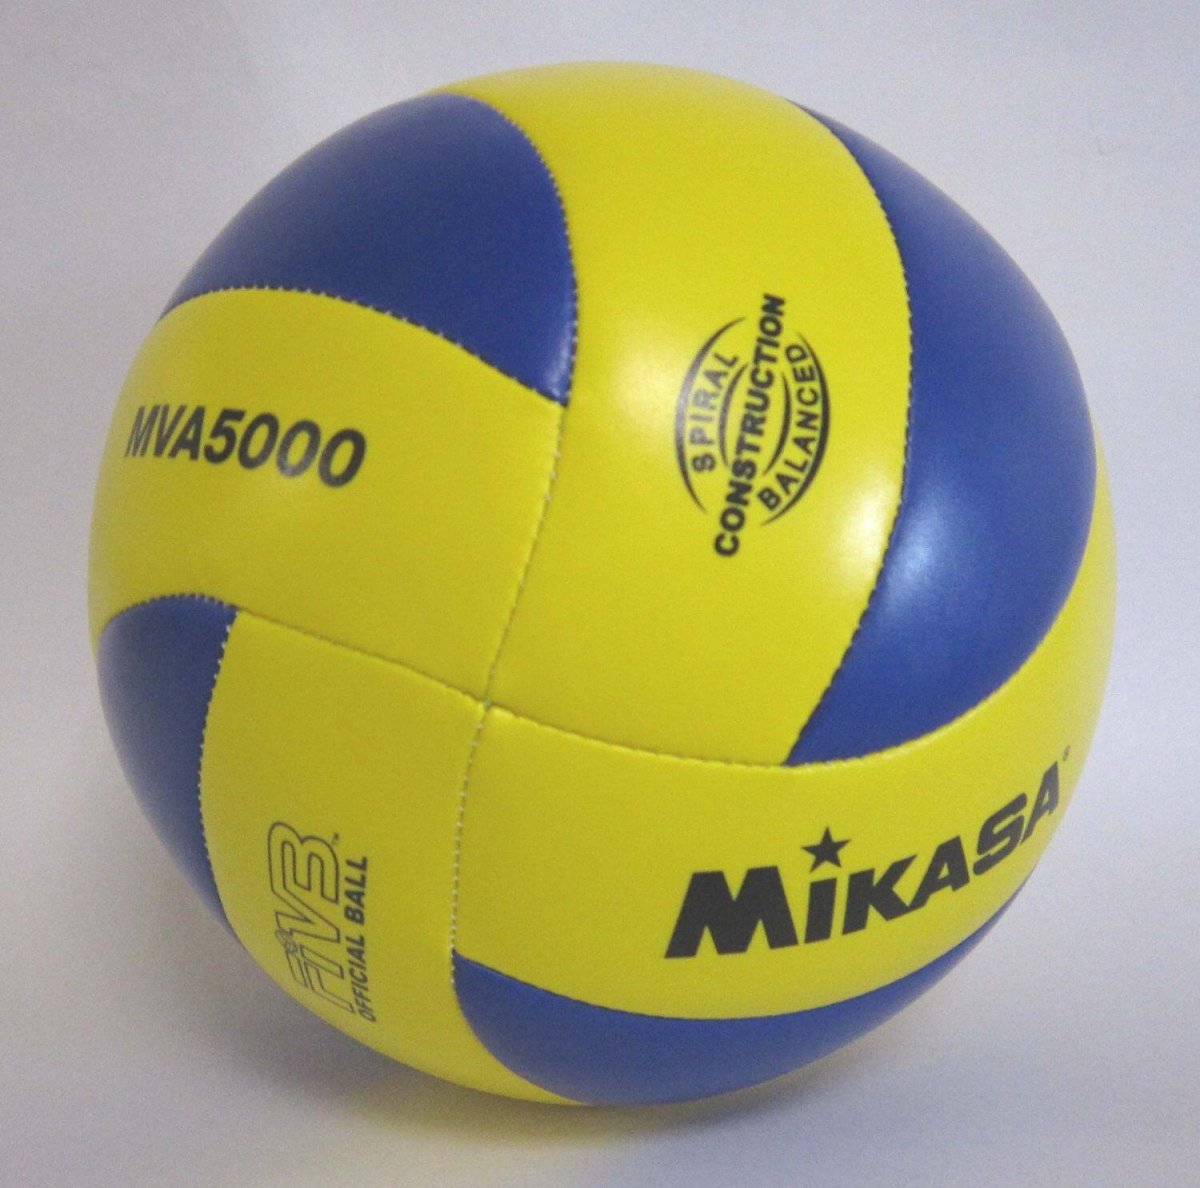 Мяч Mikasa v300